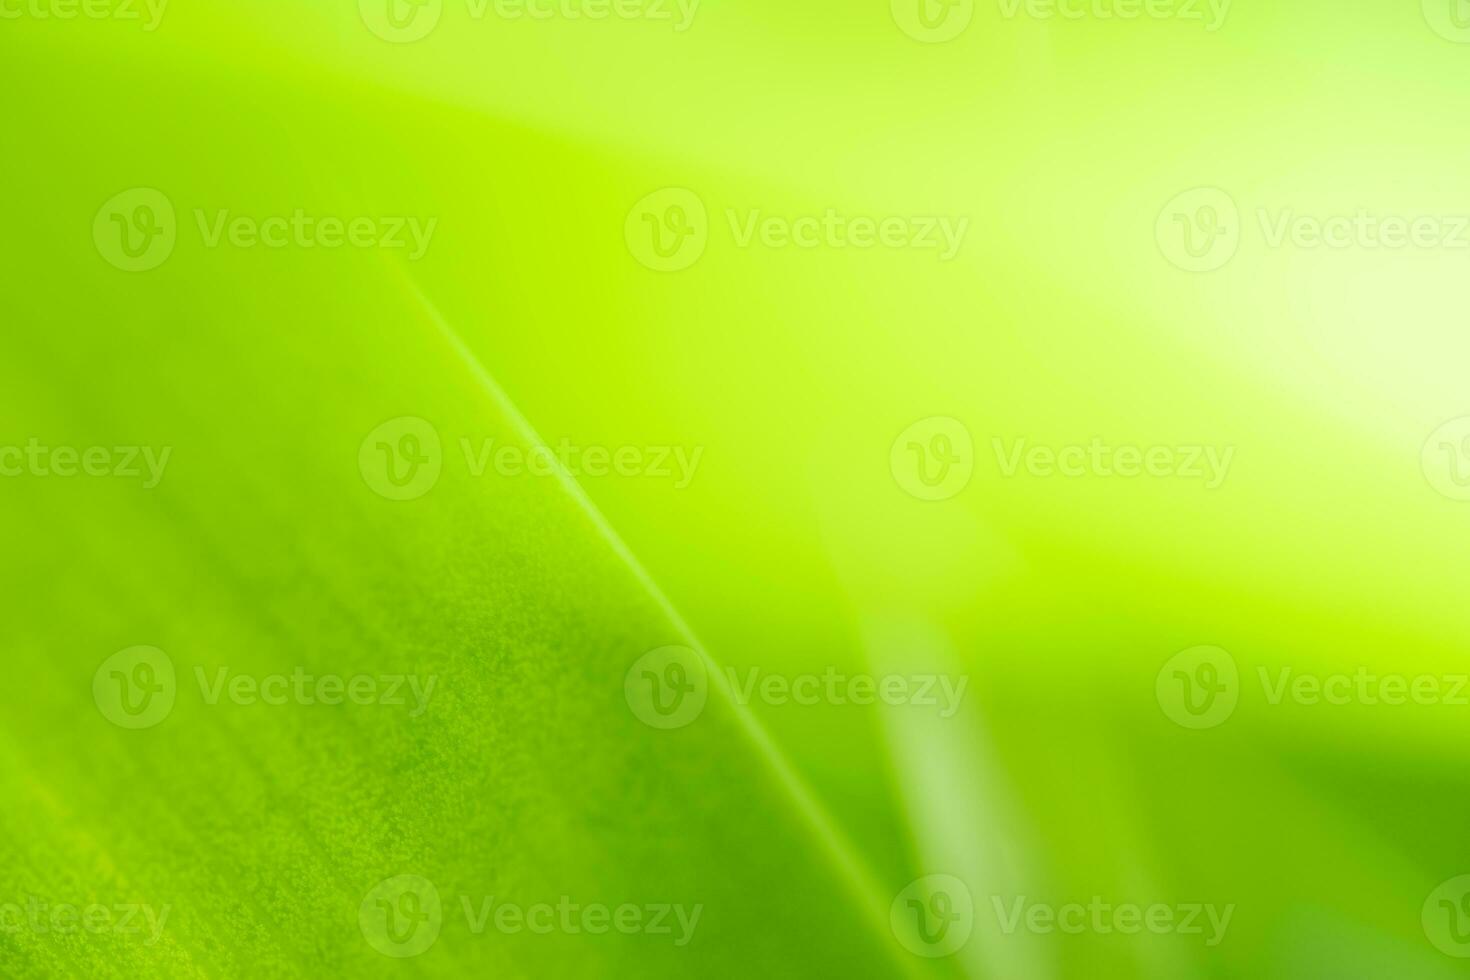 vista de la naturaleza de la hoja verde sobre fondo verde borroso en el jardín con espacio de copia usando como fondo el paisaje de plantas verdes naturales, ecología, papel pintado fresco foto